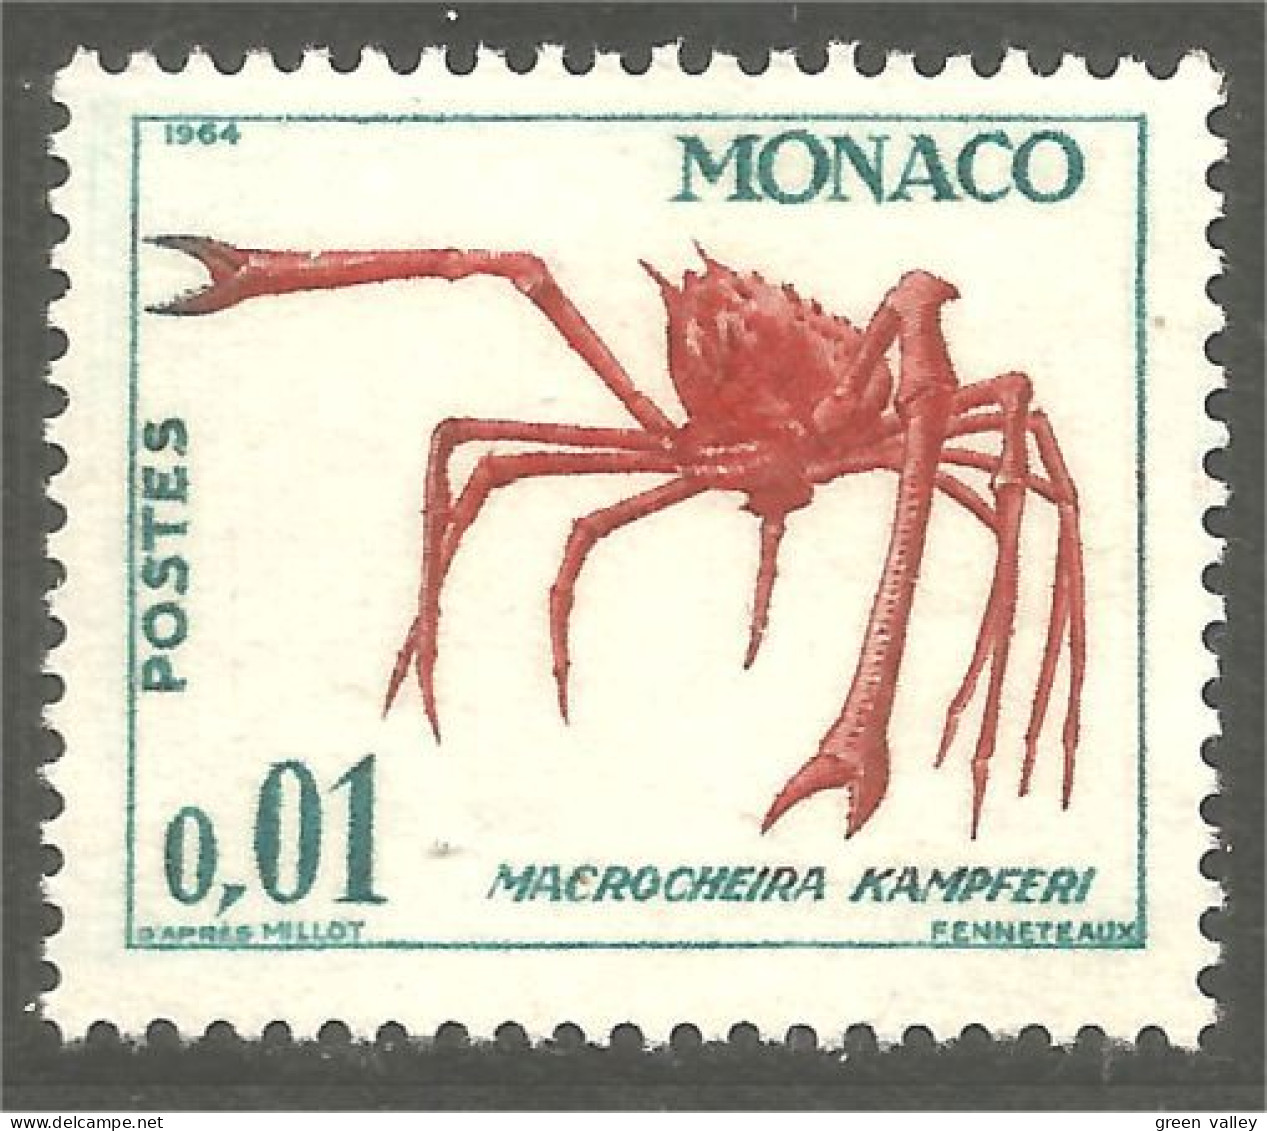 630x Monaco Crabe Crab MNH ** Neuf SC (MON-968) - Schalentiere